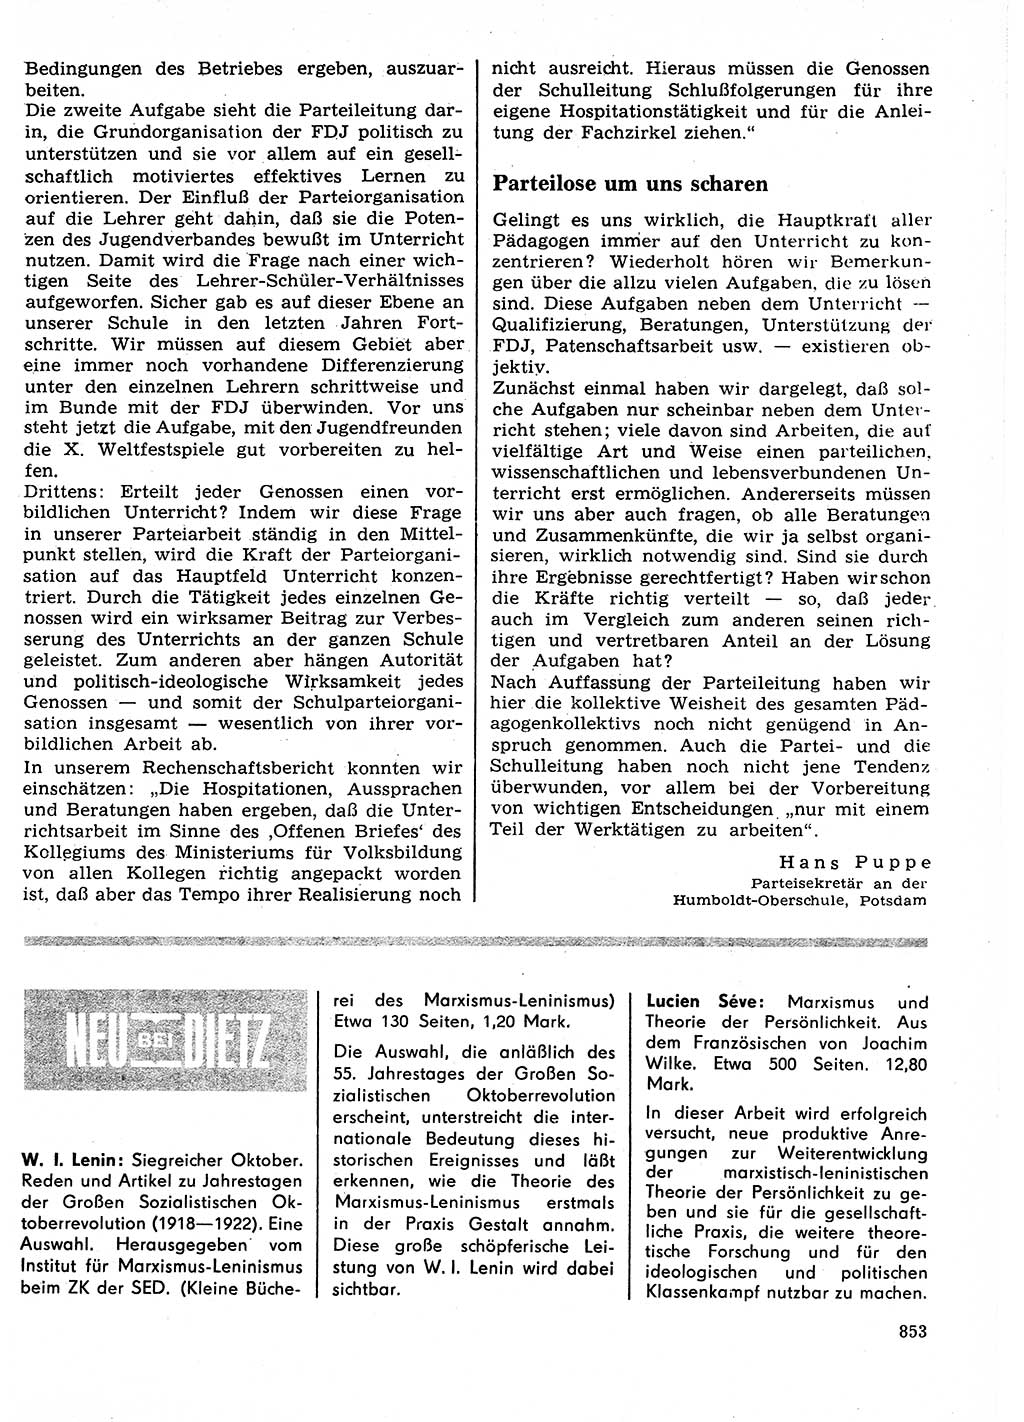 Neuer Weg (NW), Organ des Zentralkomitees (ZK) der SED (Sozialistische Einheitspartei Deutschlands) für Fragen des Parteilebens, 27. Jahrgang [Deutsche Demokratische Republik (DDR)] 1972, Seite 853 (NW ZK SED DDR 1972, S. 853)